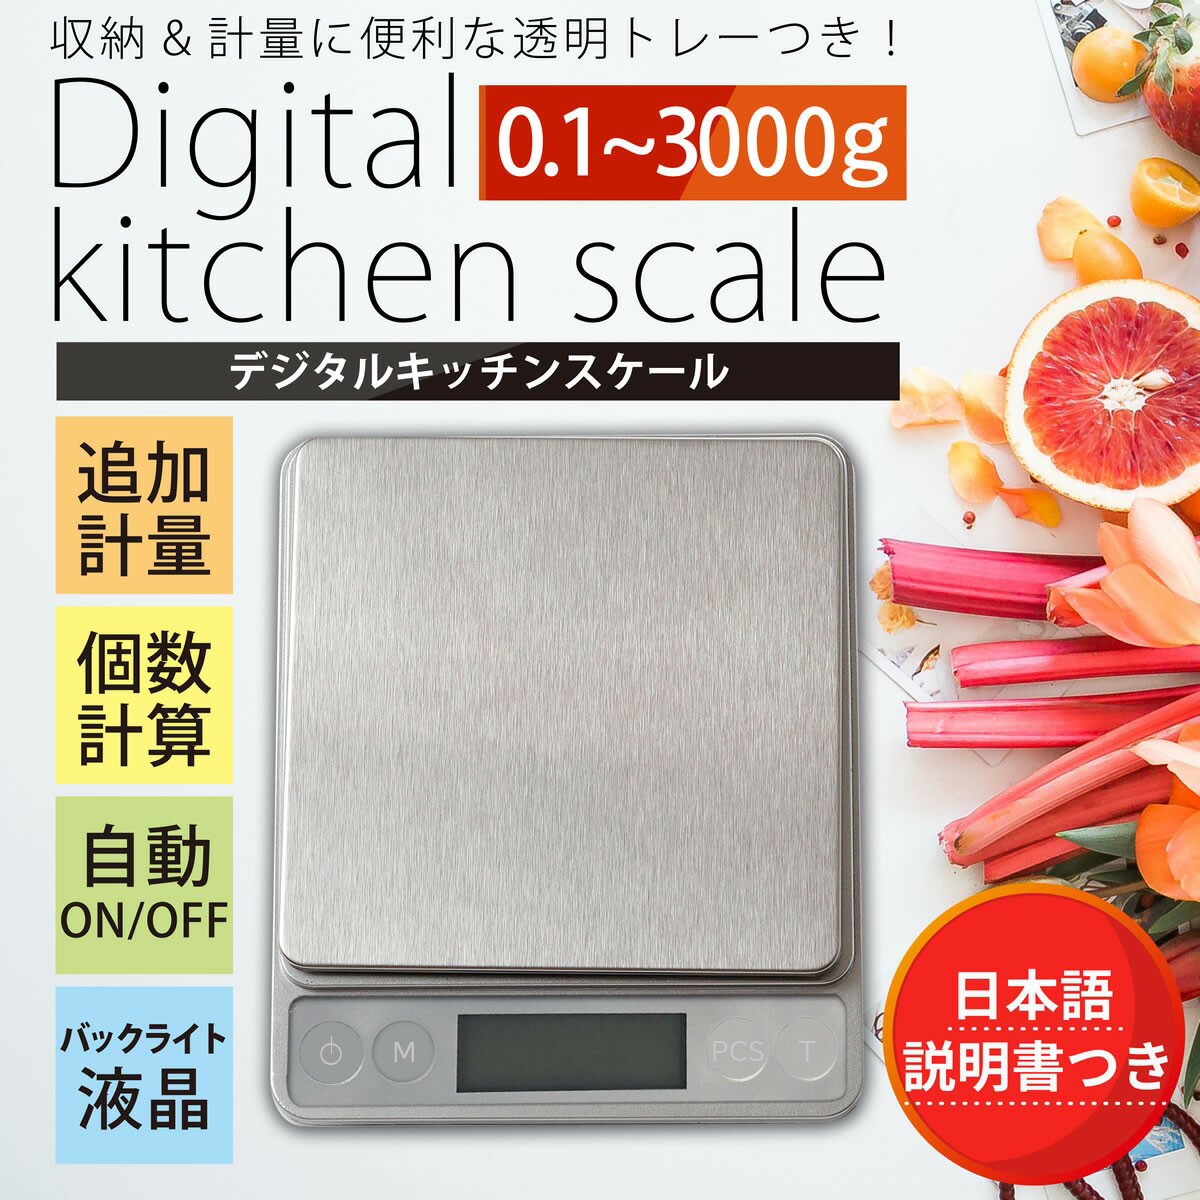 名作 キッチンスケール 日本語説明書付き デジタルスケール 計り キッチン 電子秤 クッキングスケール 計量器 デジタル はかり 0.1g 単位  3kg 測り